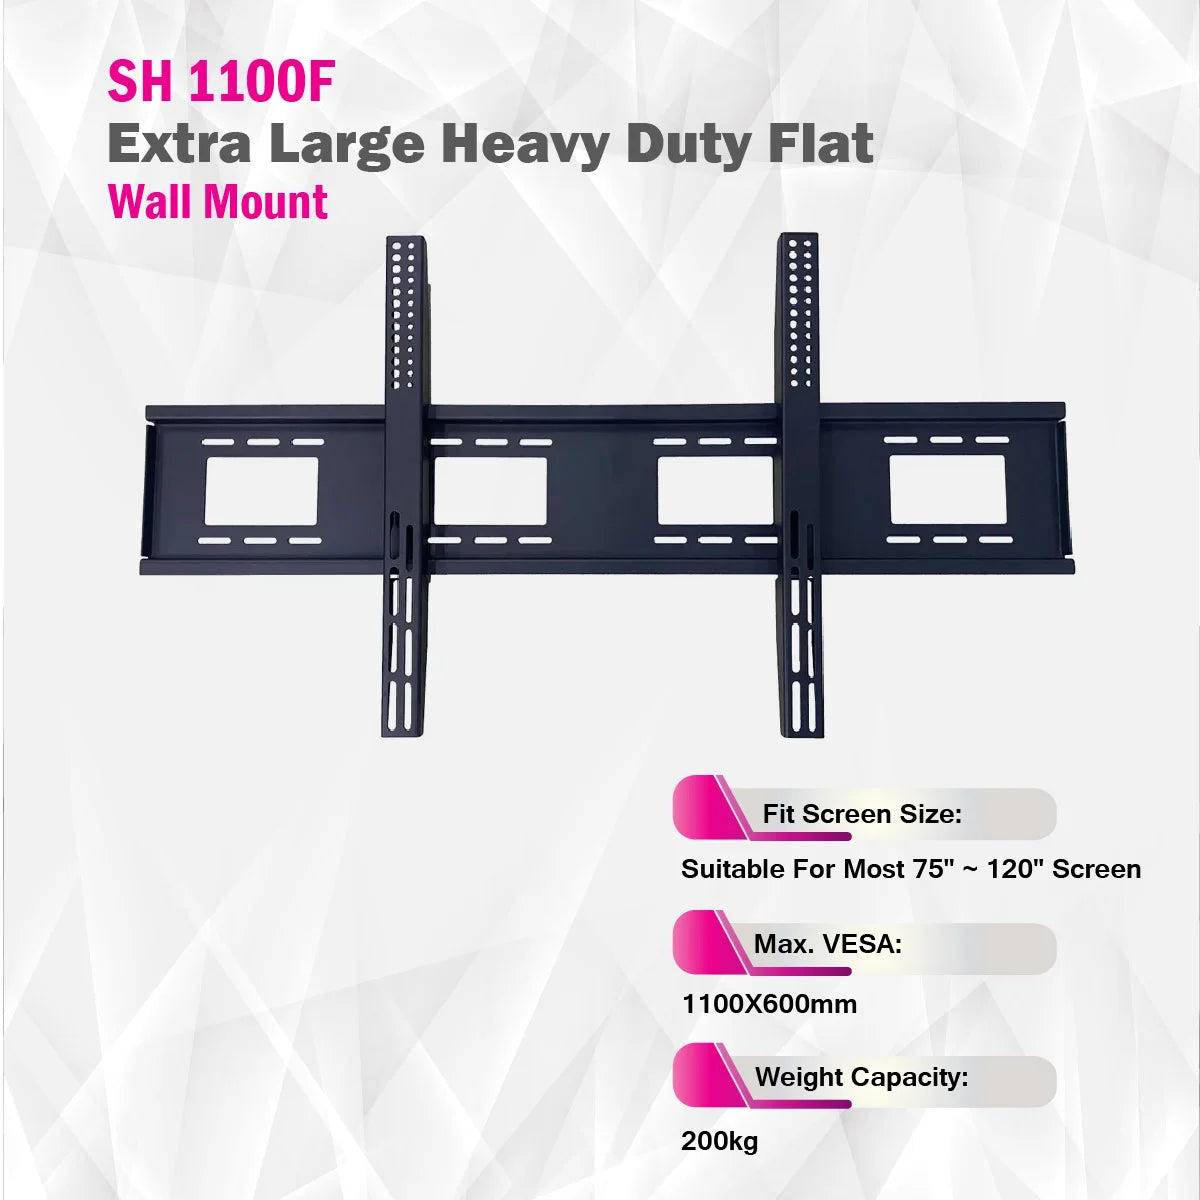 Skill Tech SH 1100F - Extra Large Heavy Duty Flat TV Wall Mount